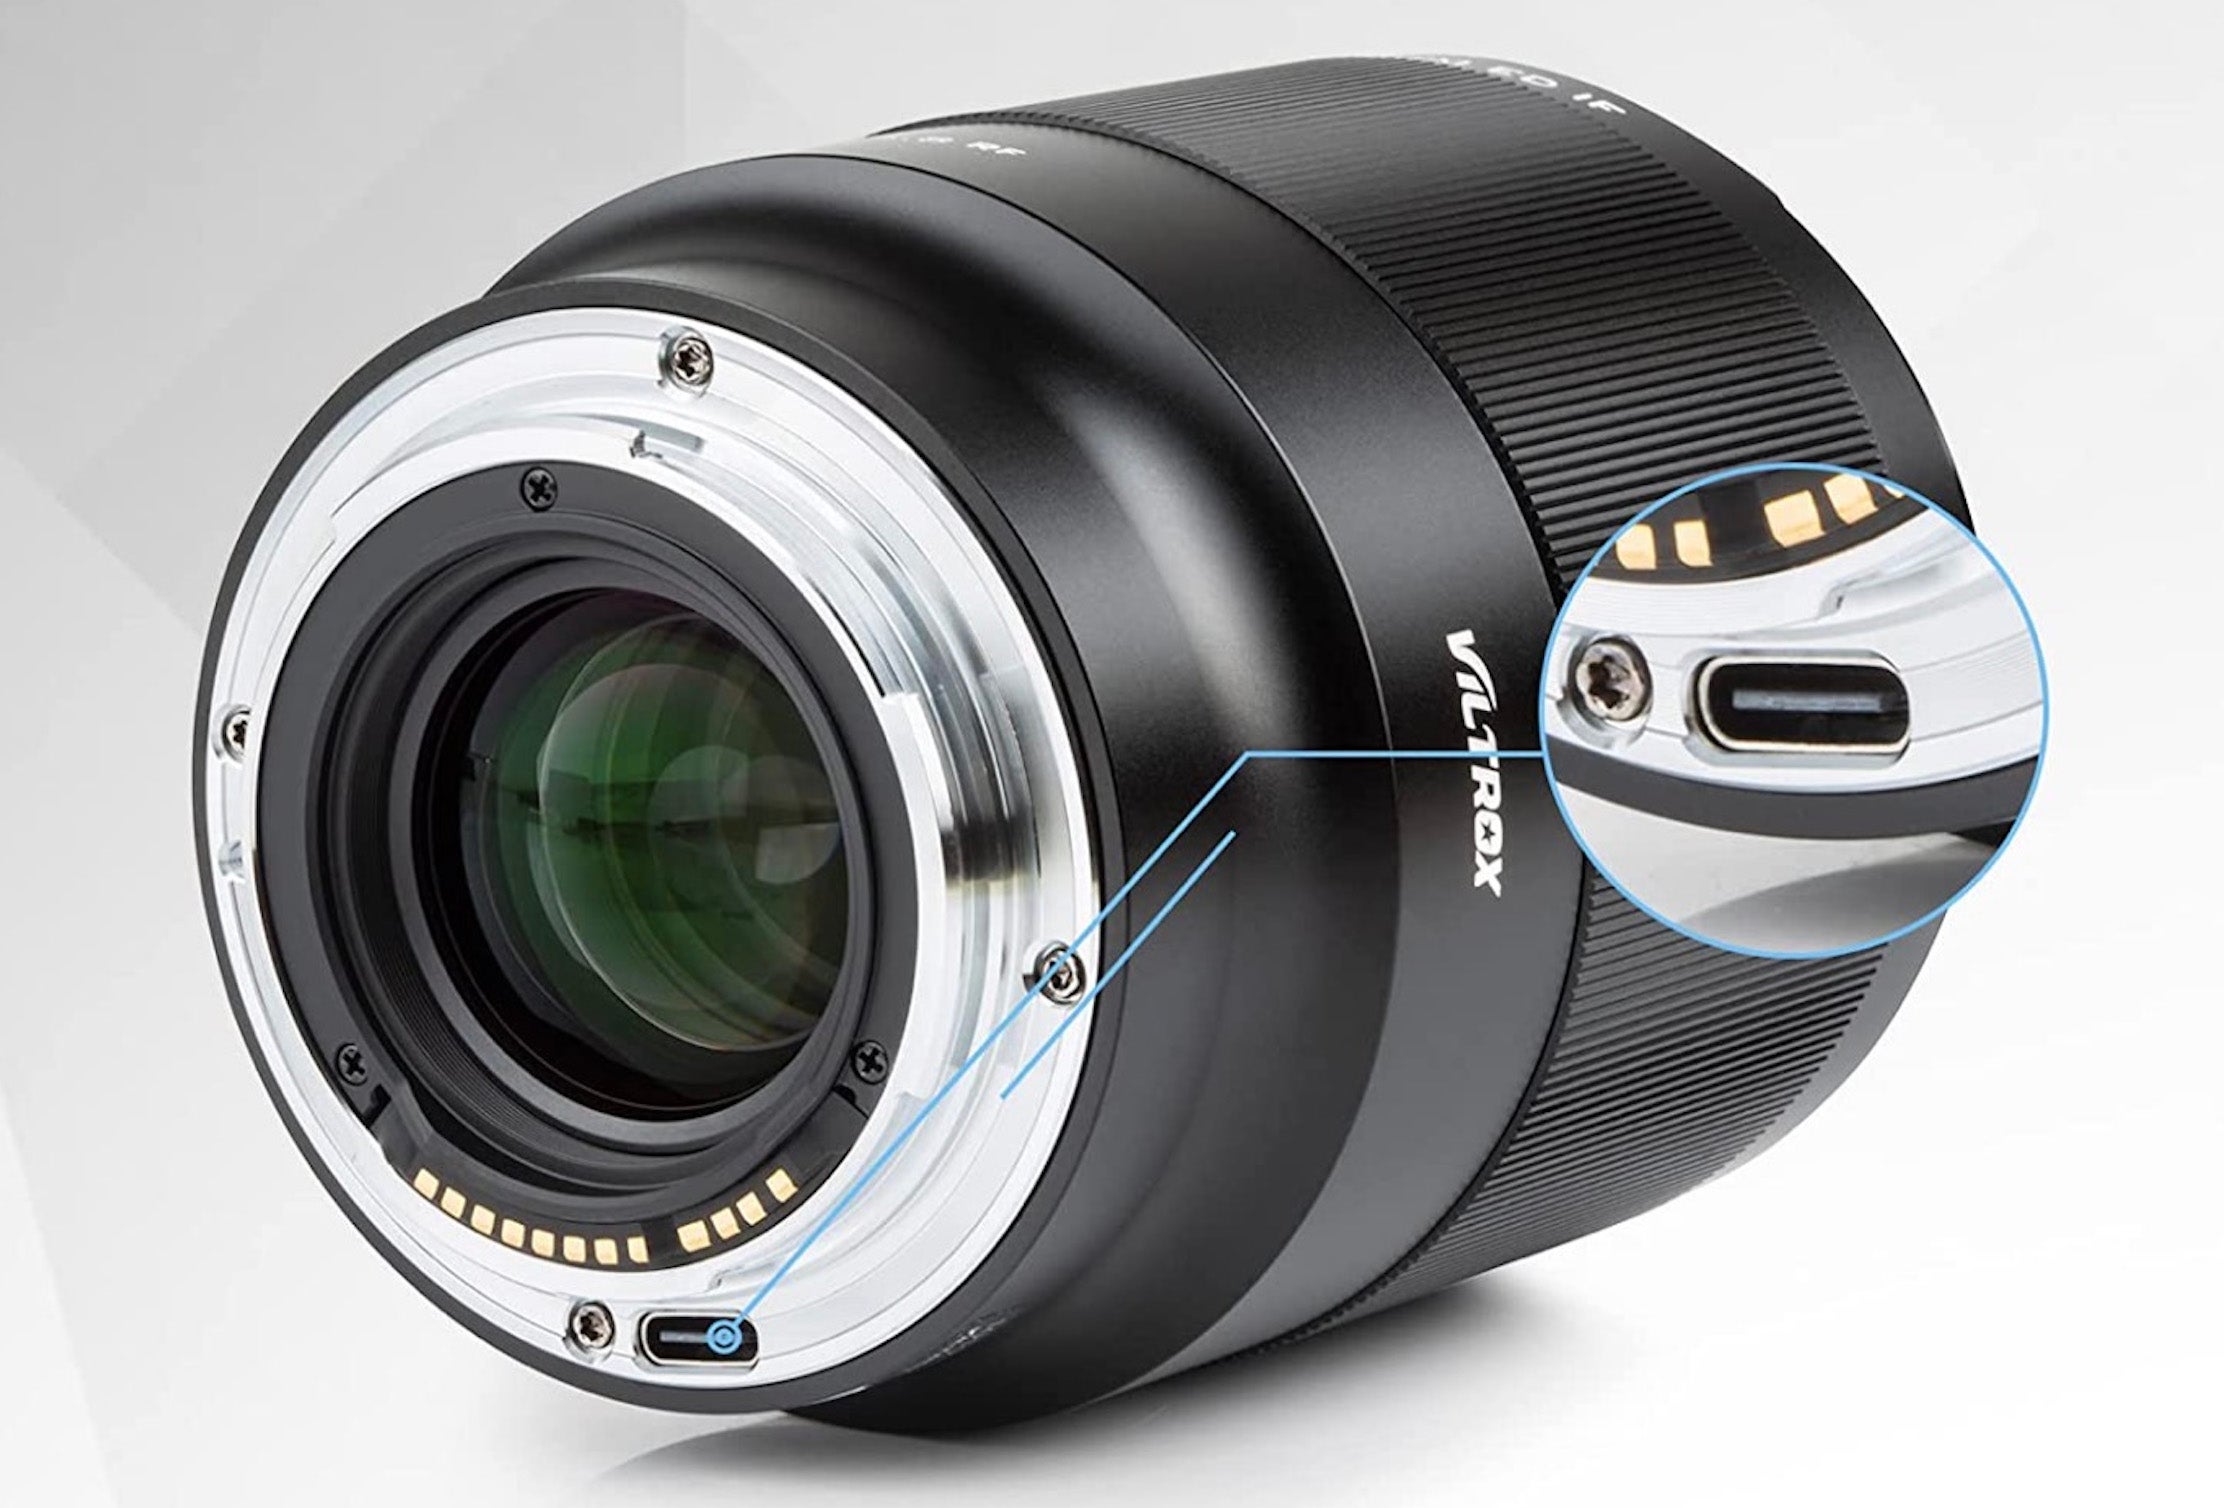 The Viltrox lens has a USB-C port built into the lens mount.